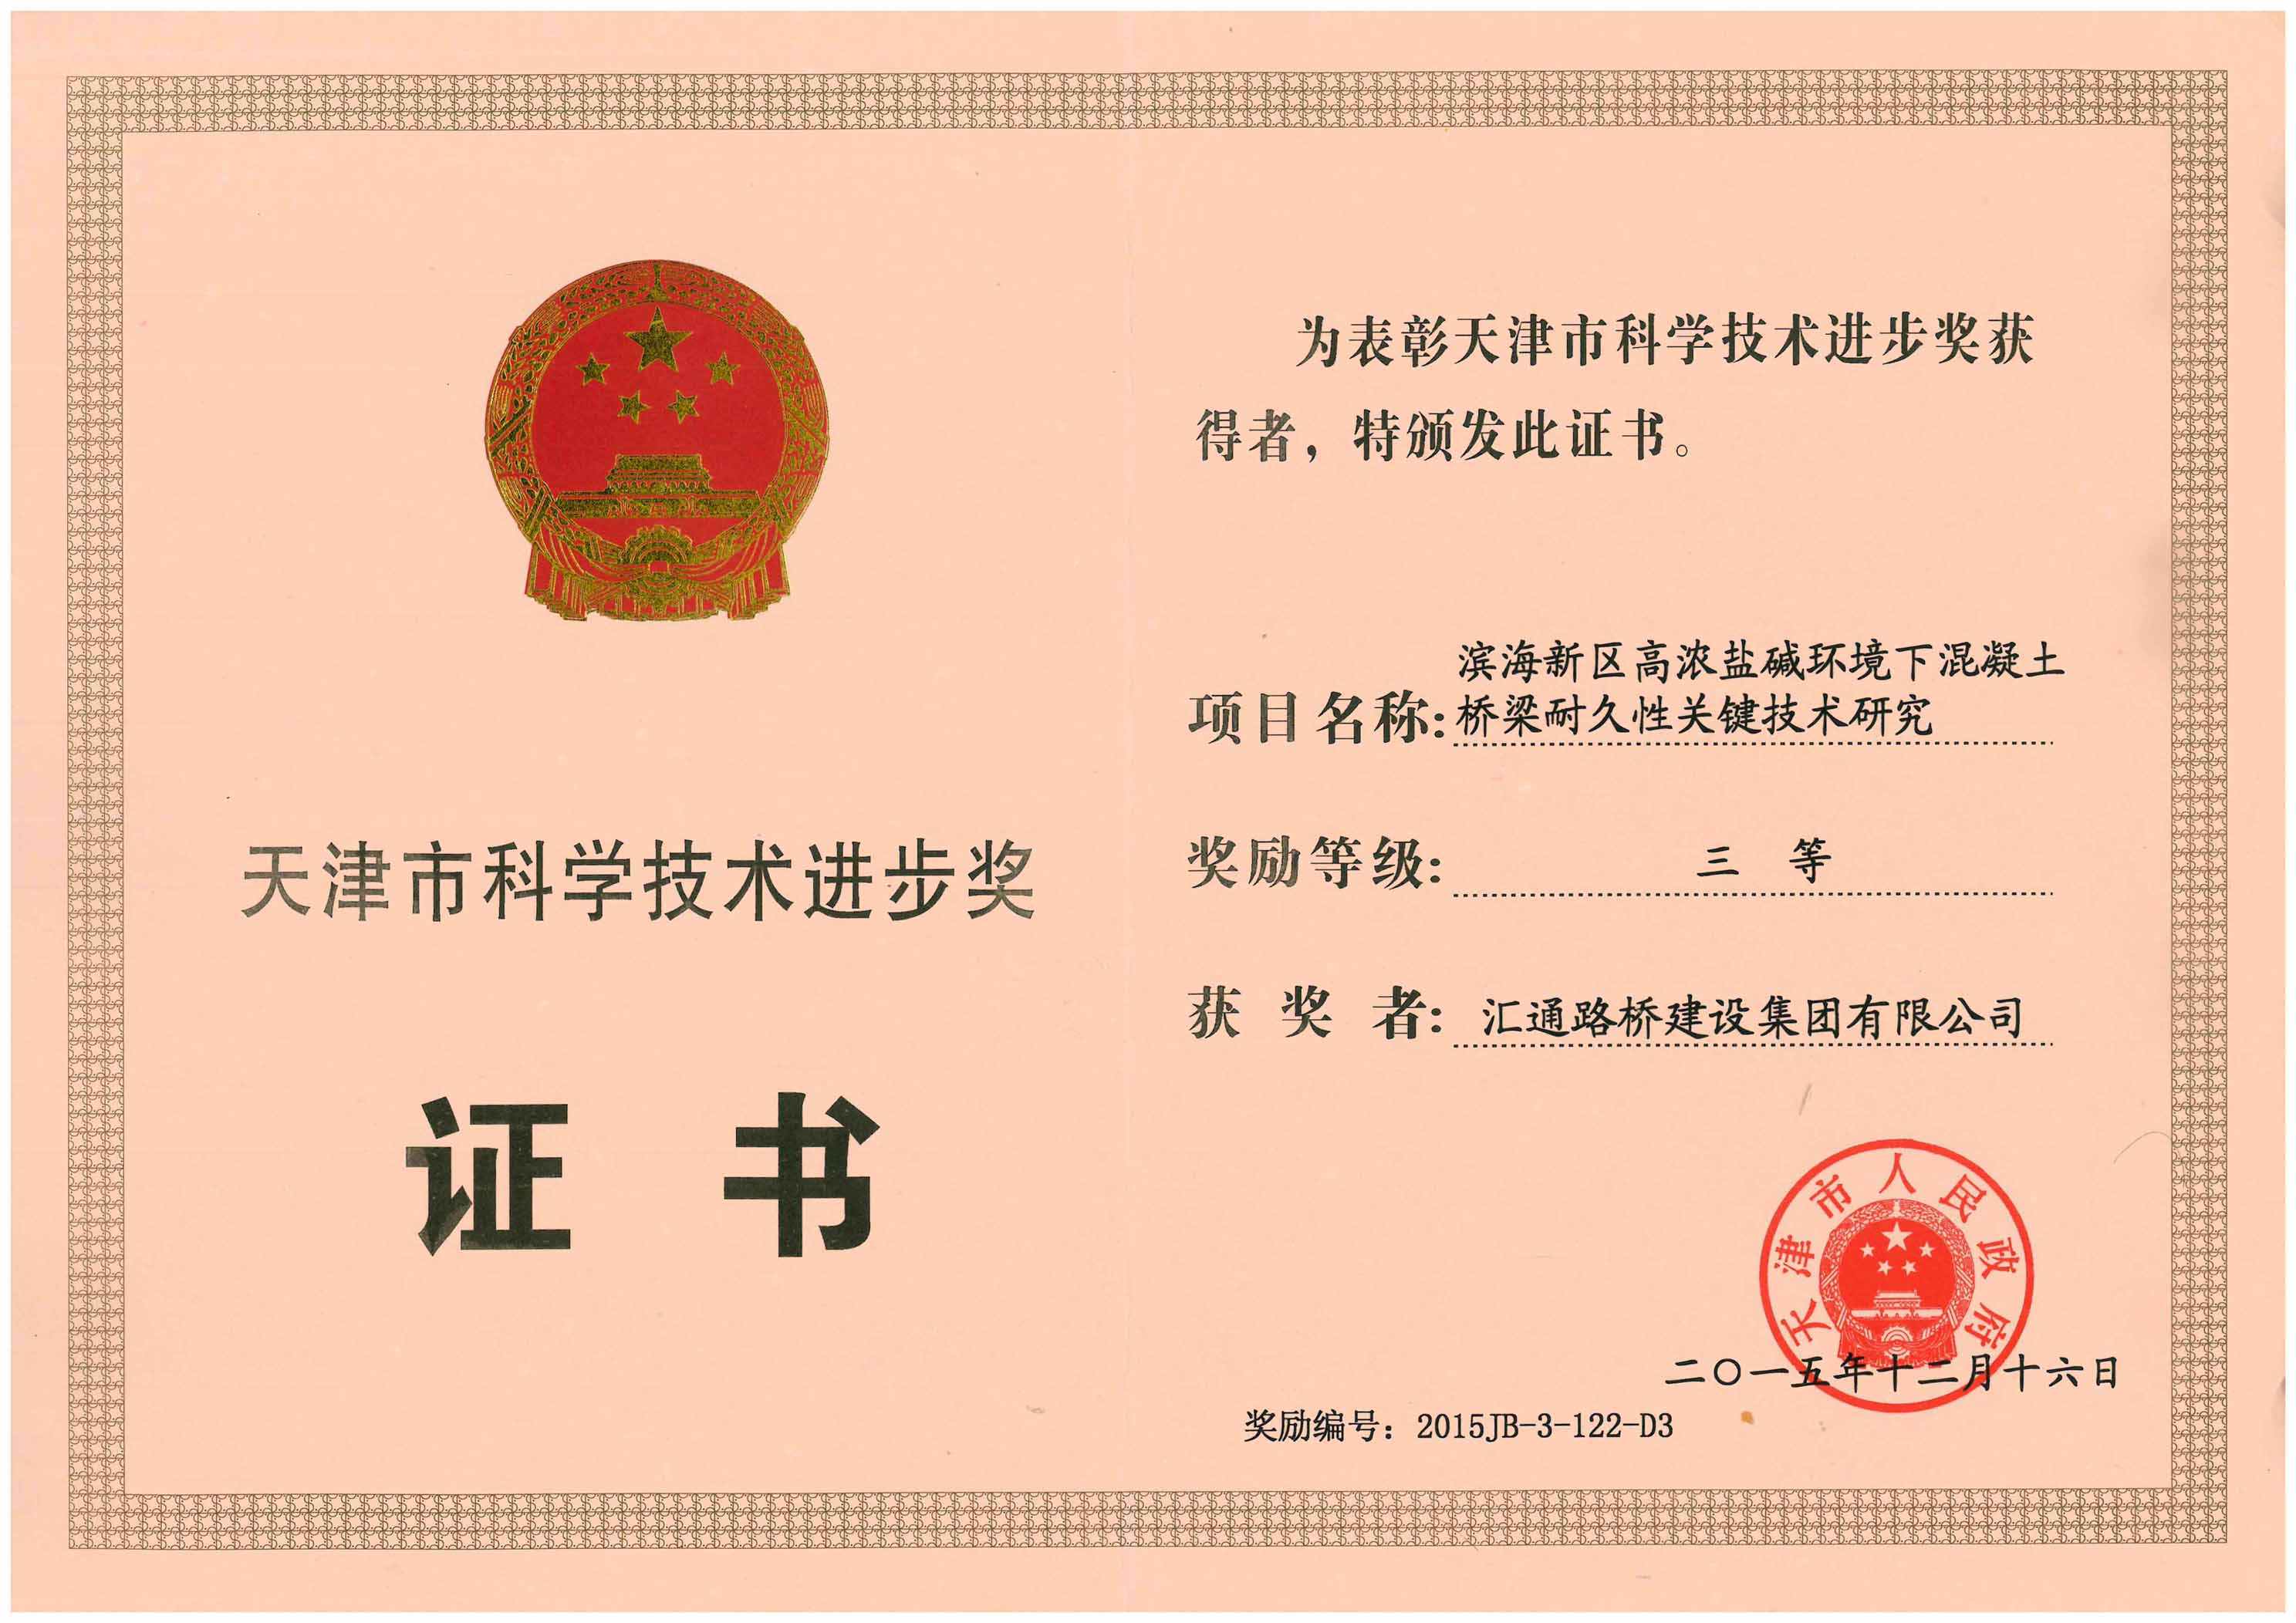 集团公司喜获天津市科学技术进步三等奖